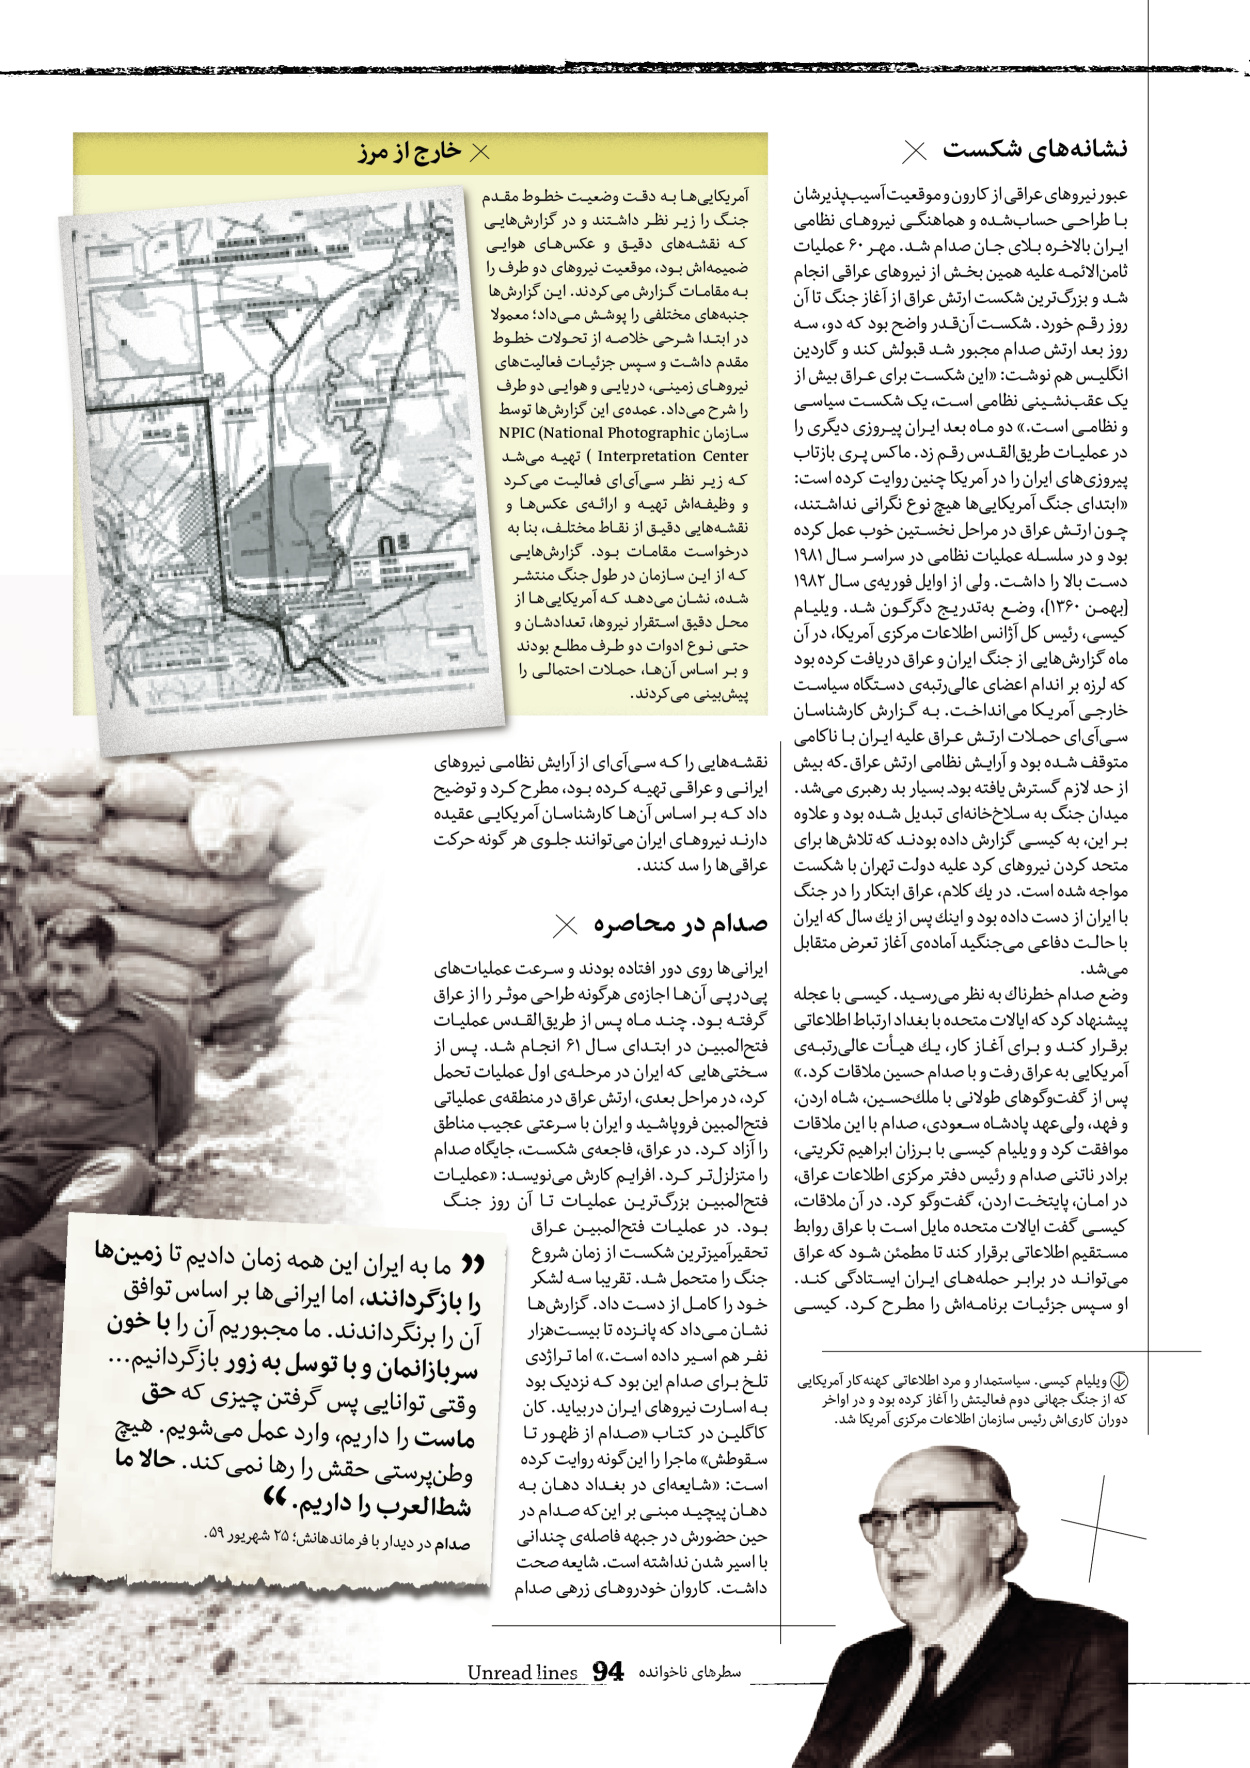 روزنامه ایران - ویژه نامه سطرهای ناخوانده - ۰۳ خرداد ۱۴۰۲ - صفحه ۹۴